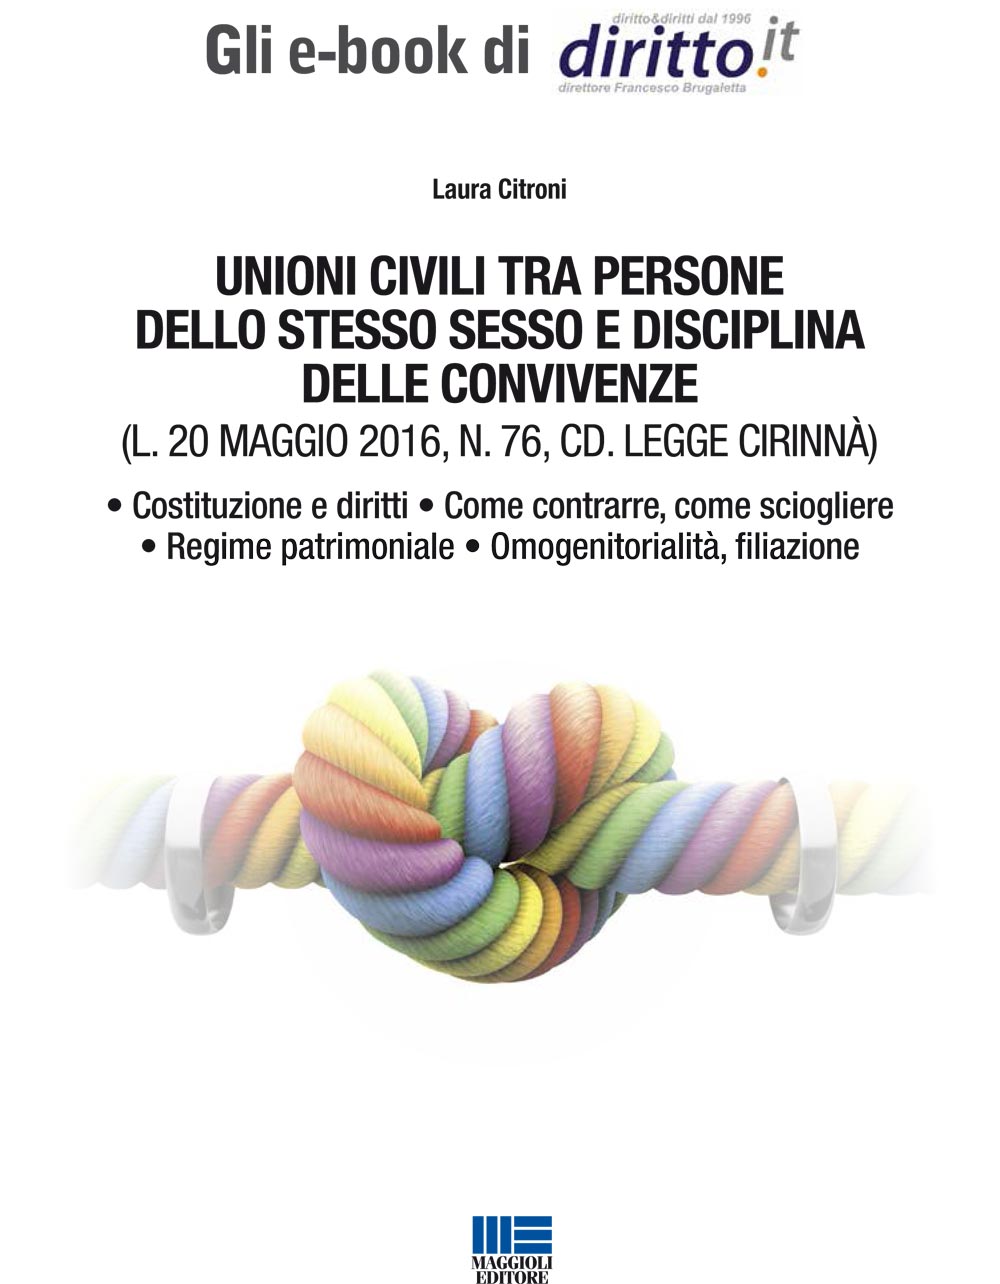 UNIONI CIVILI TRA PERSONE DELLO STESSO SESSO E DISCIPLINA DELLE CONVIVENZE (CD. LEGGE CIRINNÀ)